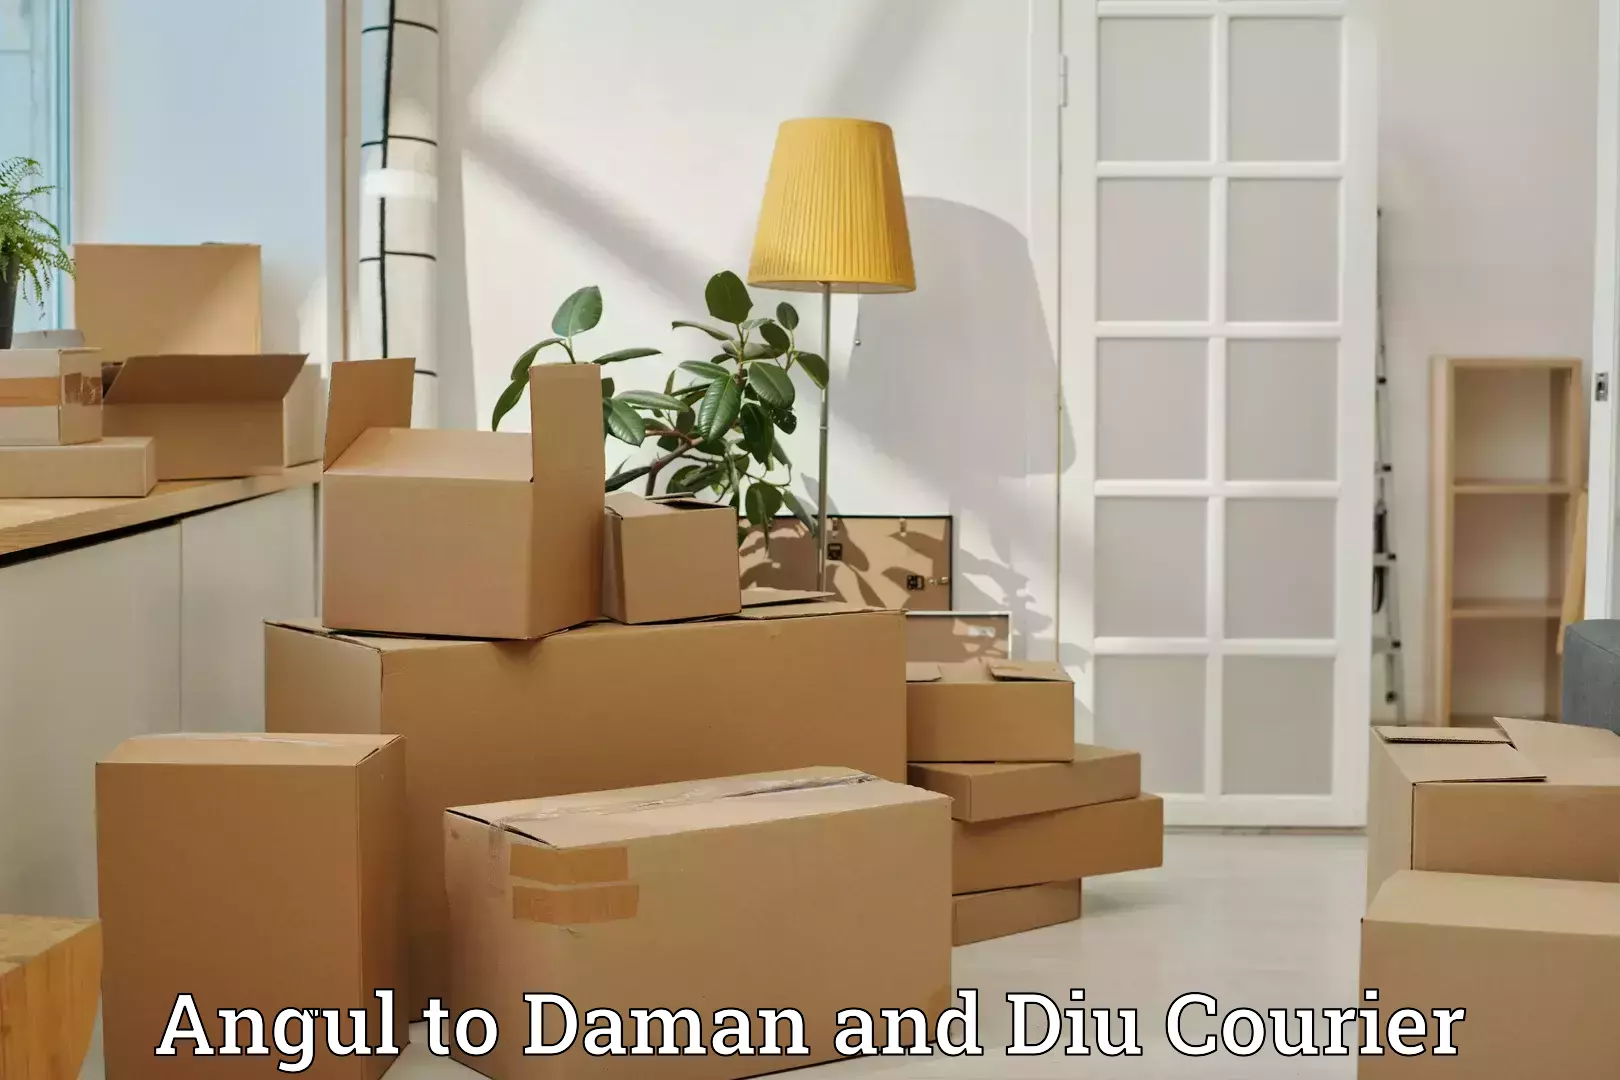 Express baggage shipping Angul to Daman and Diu